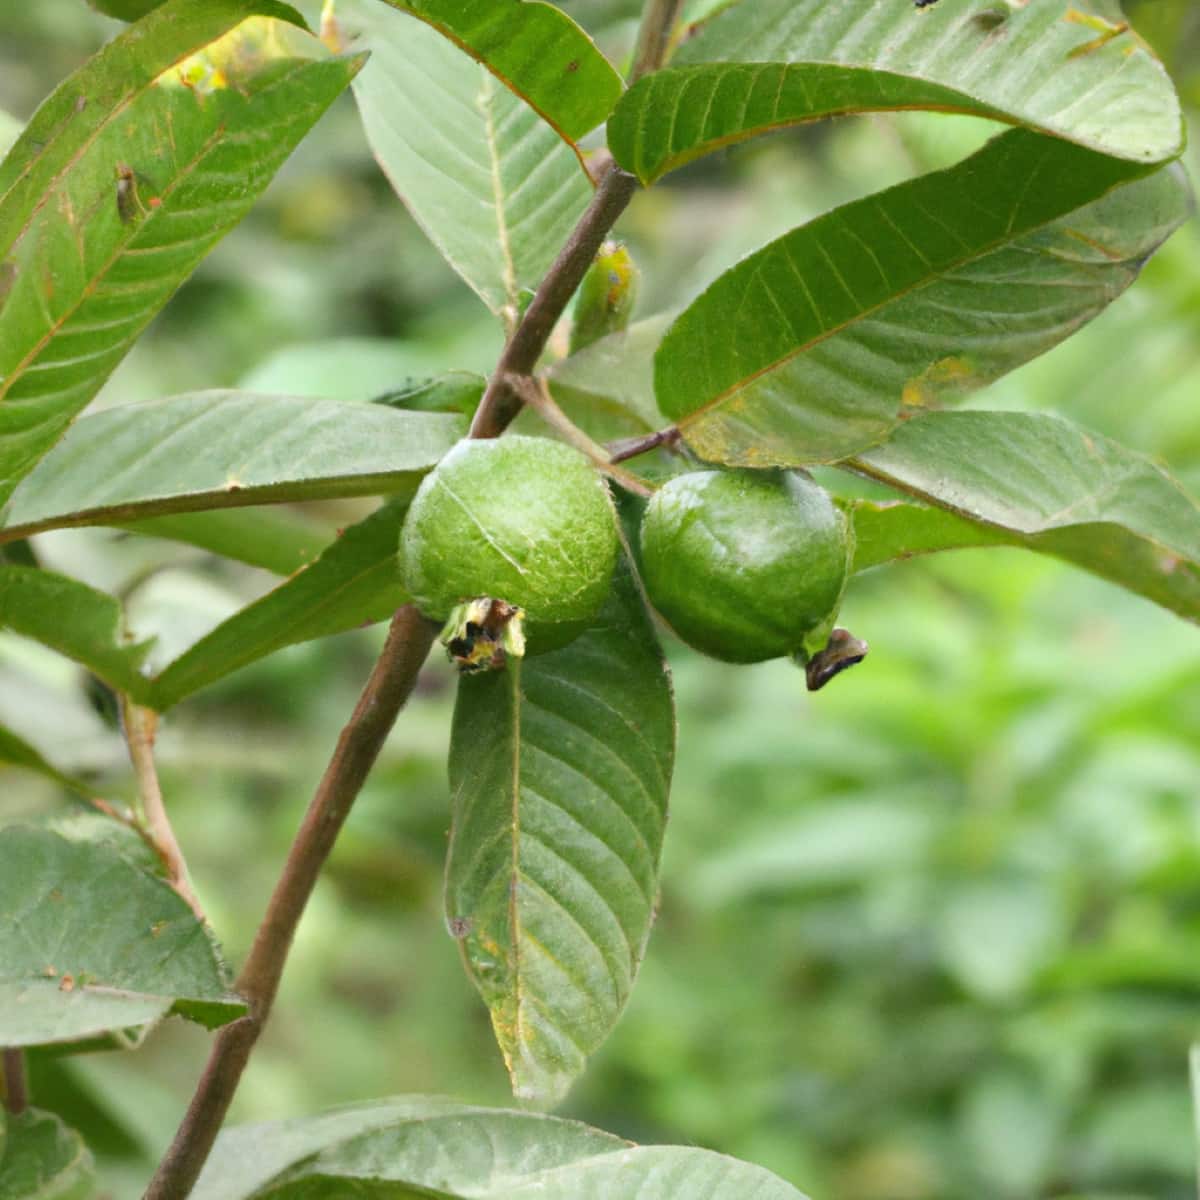 Guava Fruits